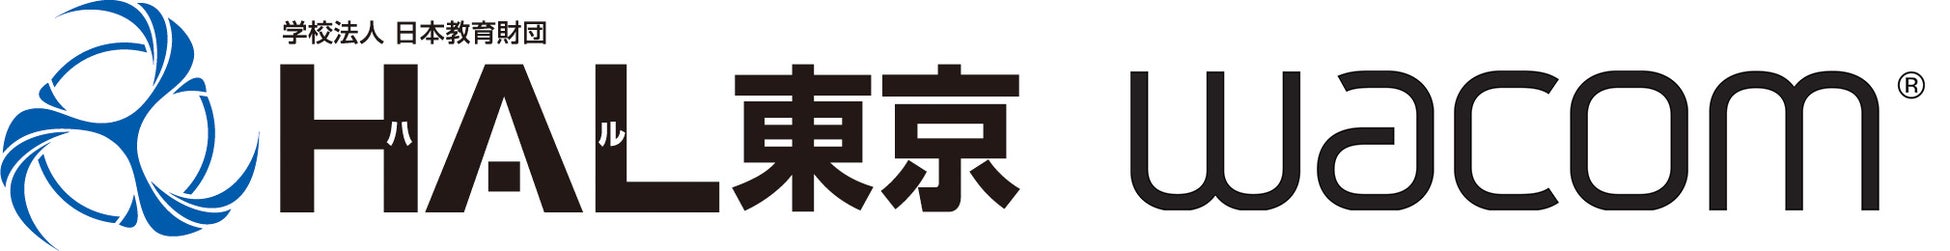 連載1周年を迎えた漫画版『燃えよ剣』が、京都を走る「嵐電・叡電」を彩る。